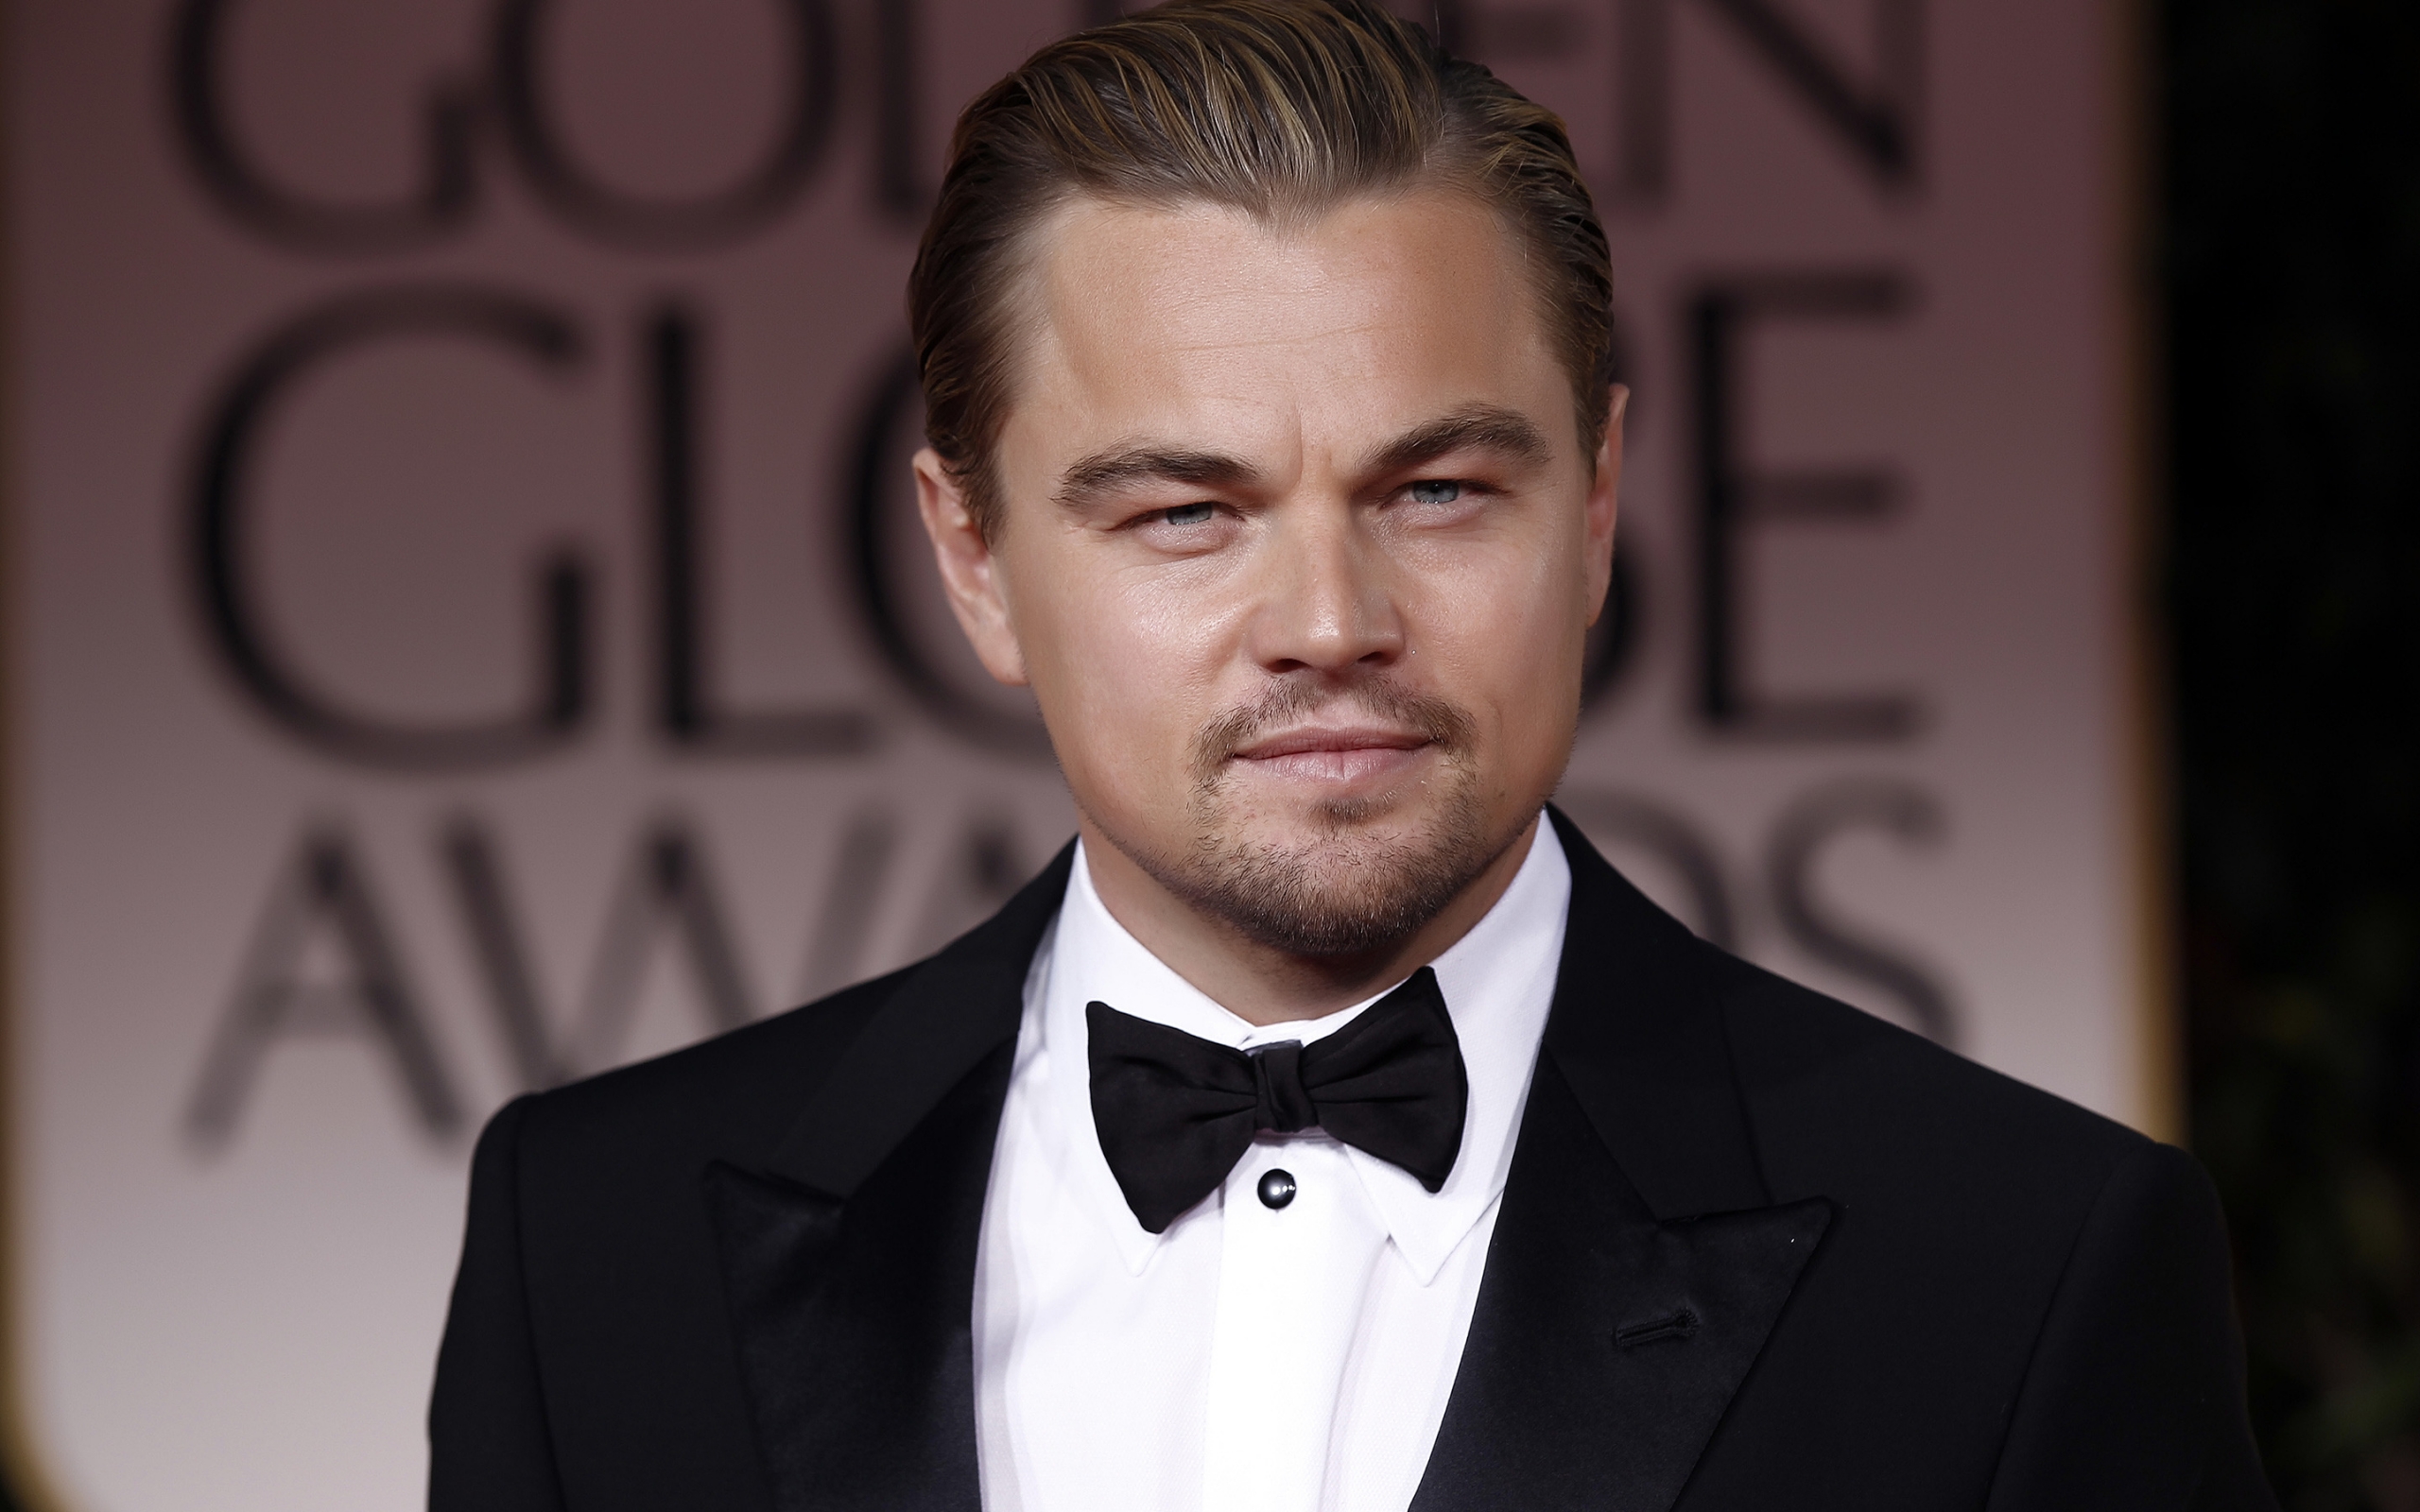 Leonardo DiCaprio in Tuxedo for 2560 x 1600 widescreen resolution